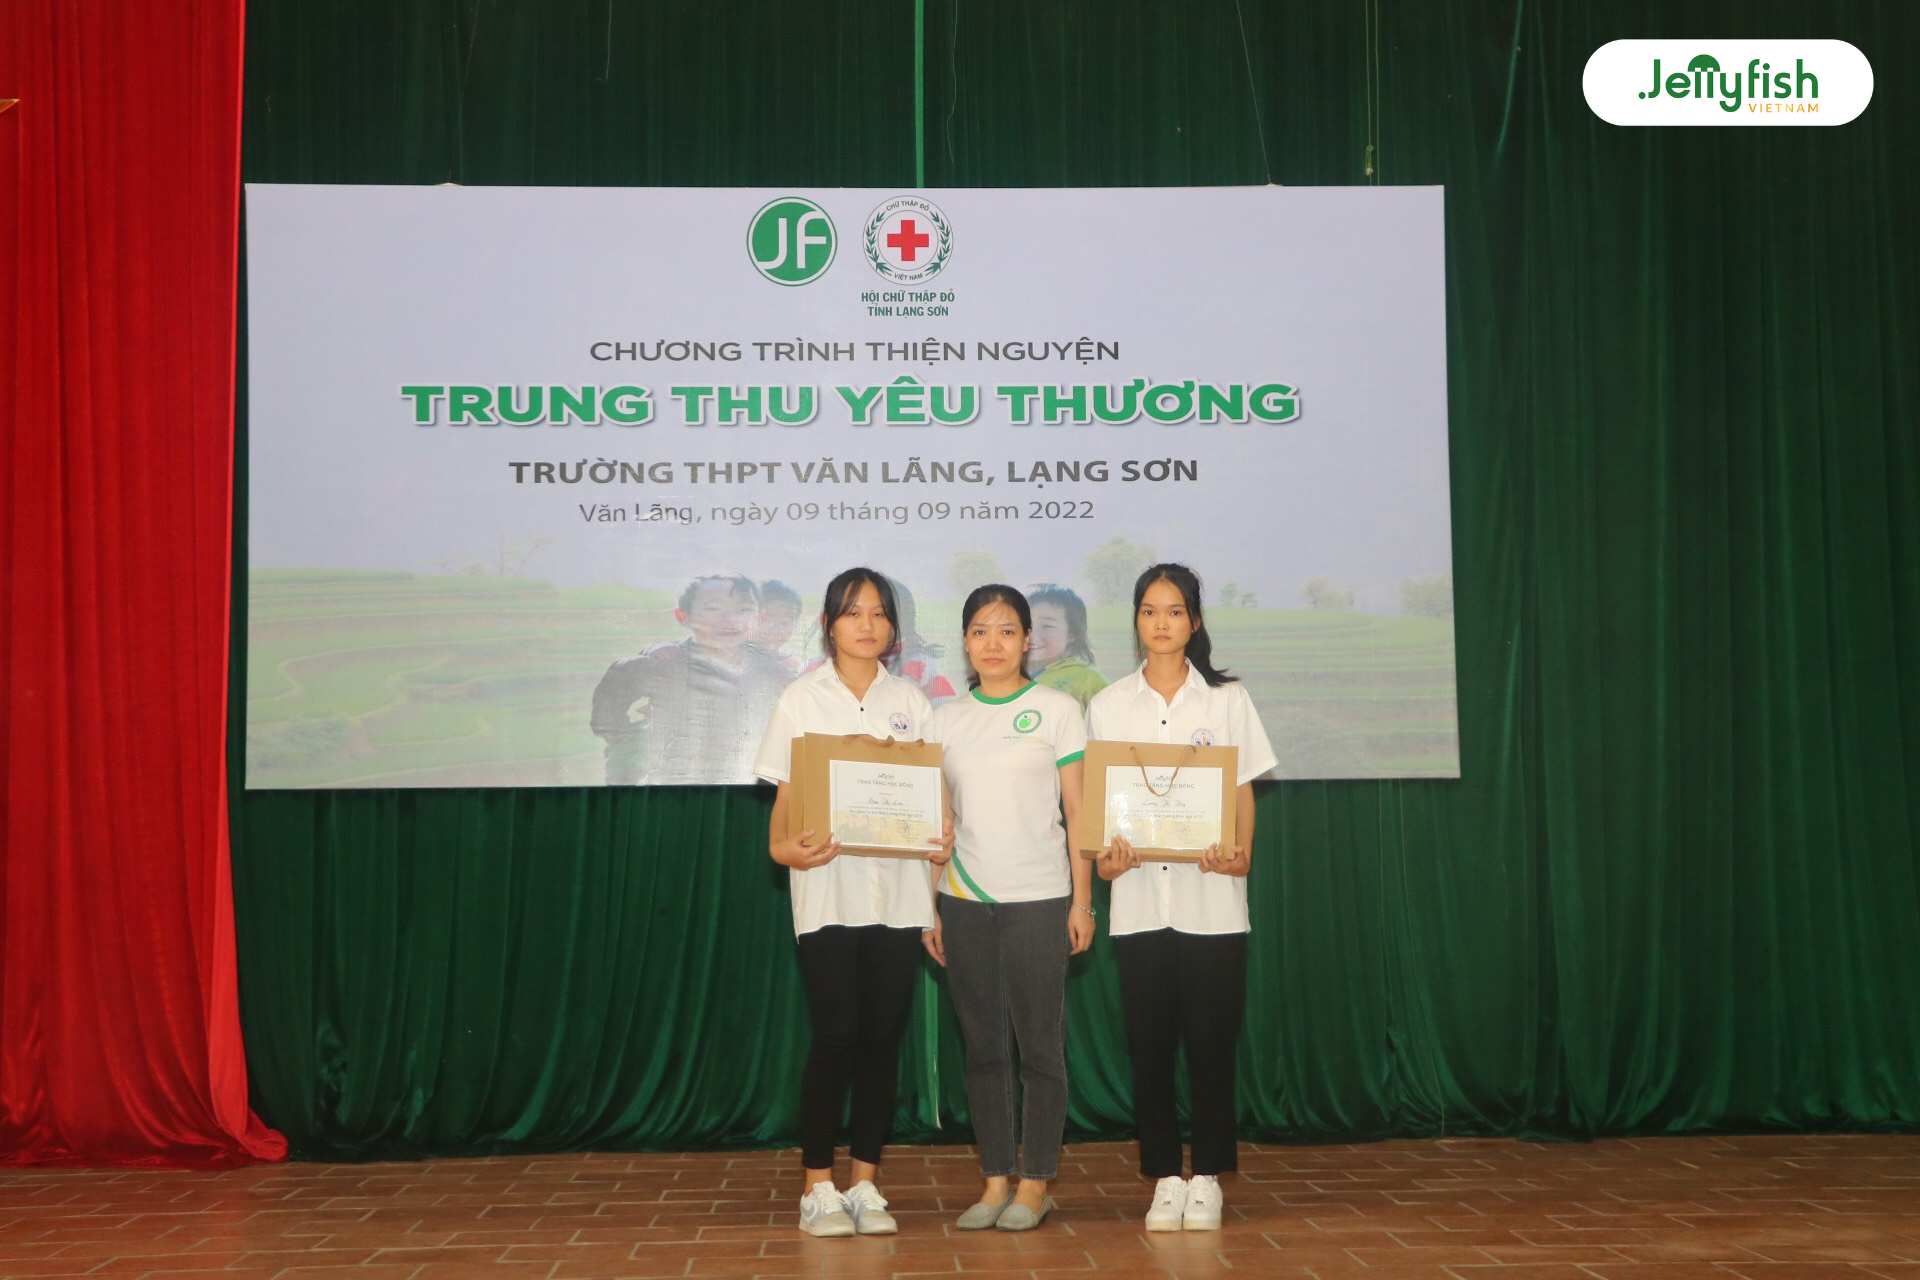 Bà Đào Thùy Dương trao tặng học bổng tới 2 em Đàm Thị Liên (bên trái) và em Lương Thị Thúy (bên phải) học bổng du học Nhật Bản GOTO